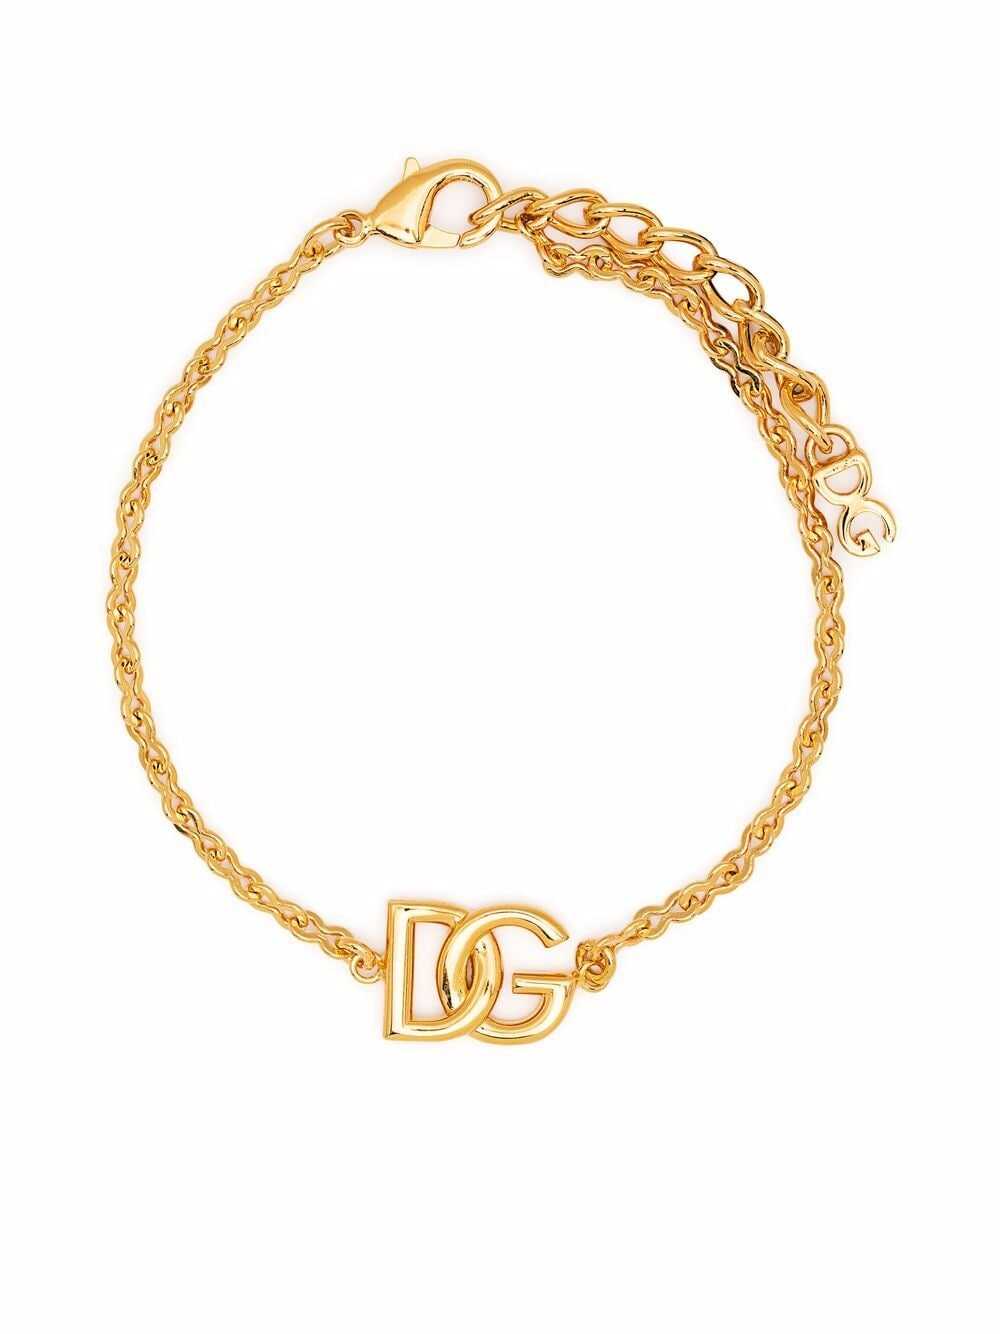 Dolce & Gabbana BRACELETS GOLD image6